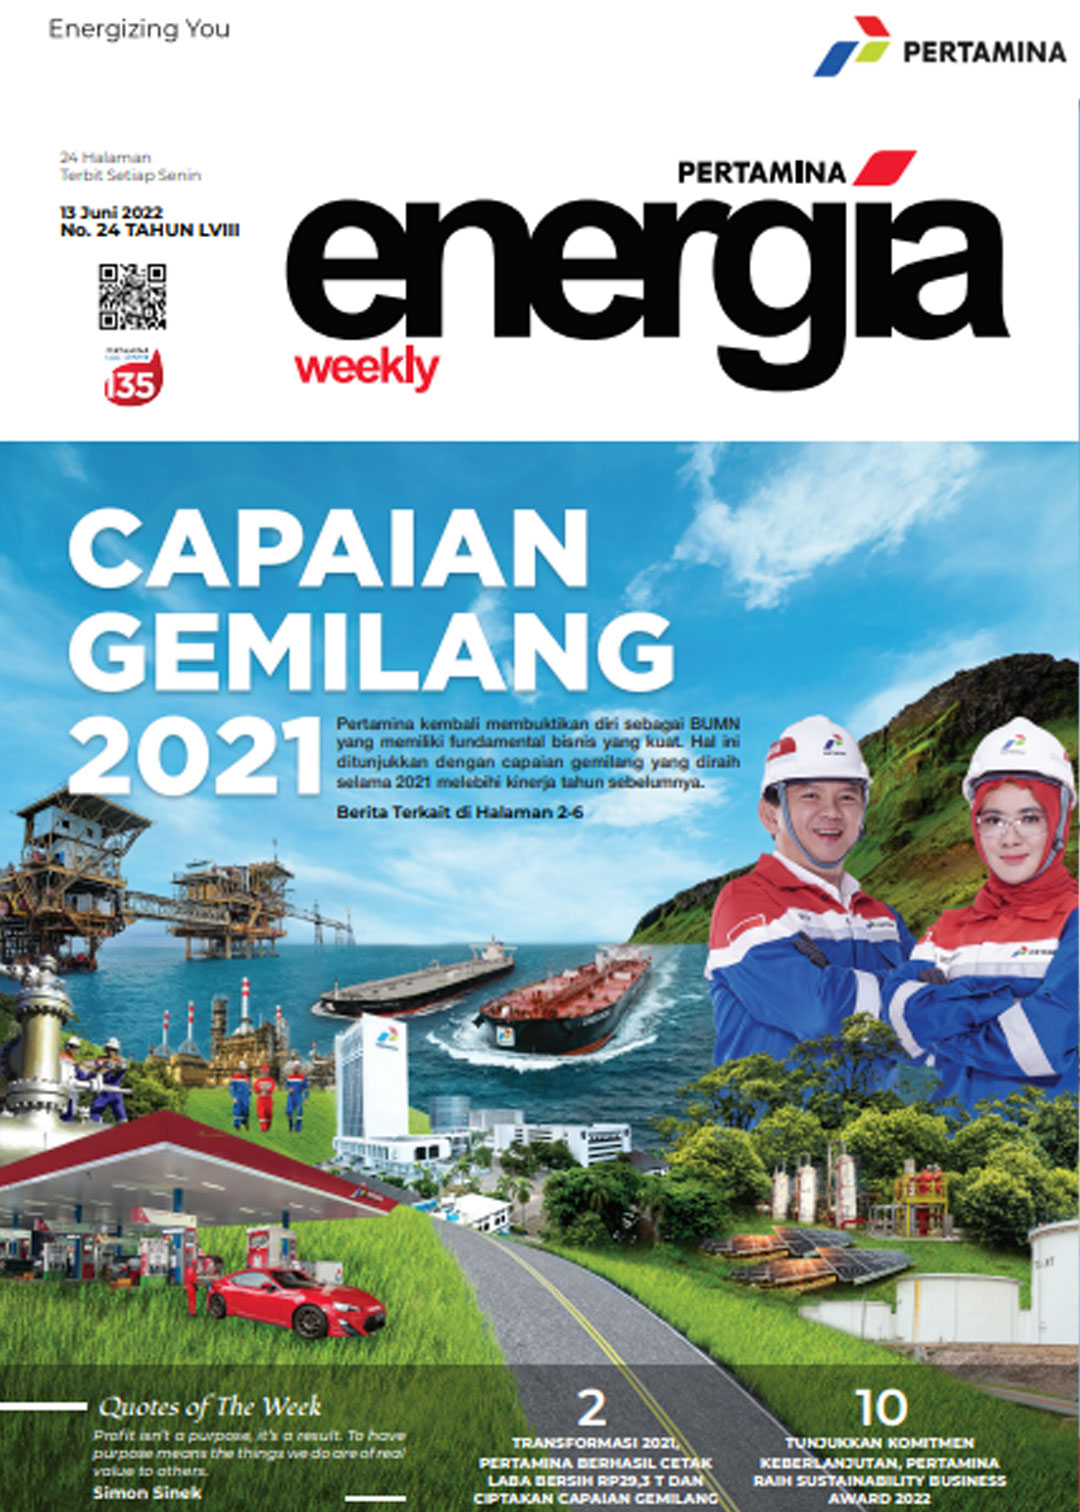 Energia Weekly 2nd Week of June 2022